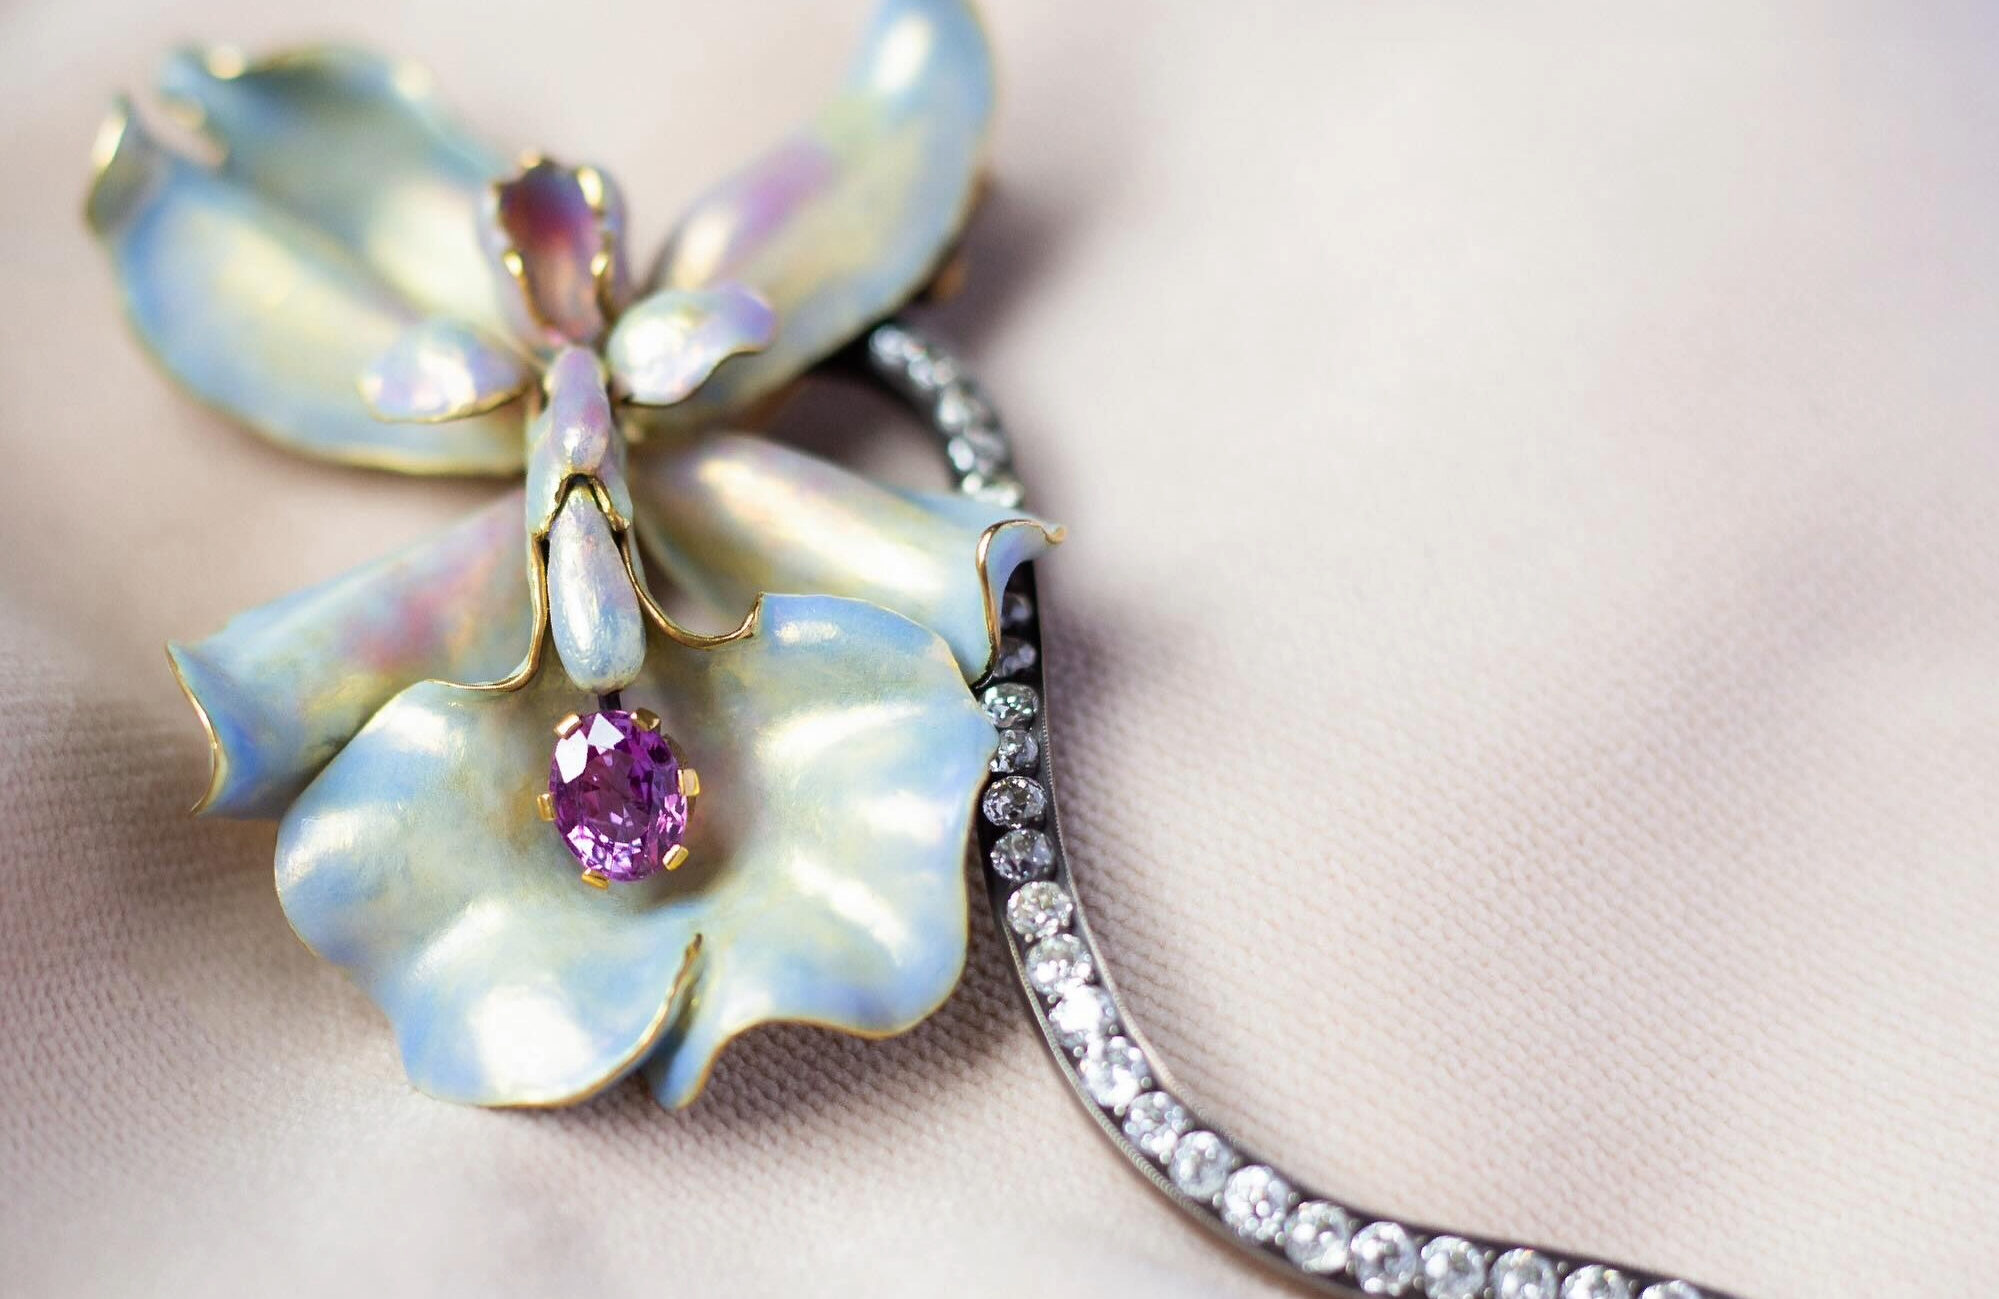 Walton's Jewelry Orchid Brooch